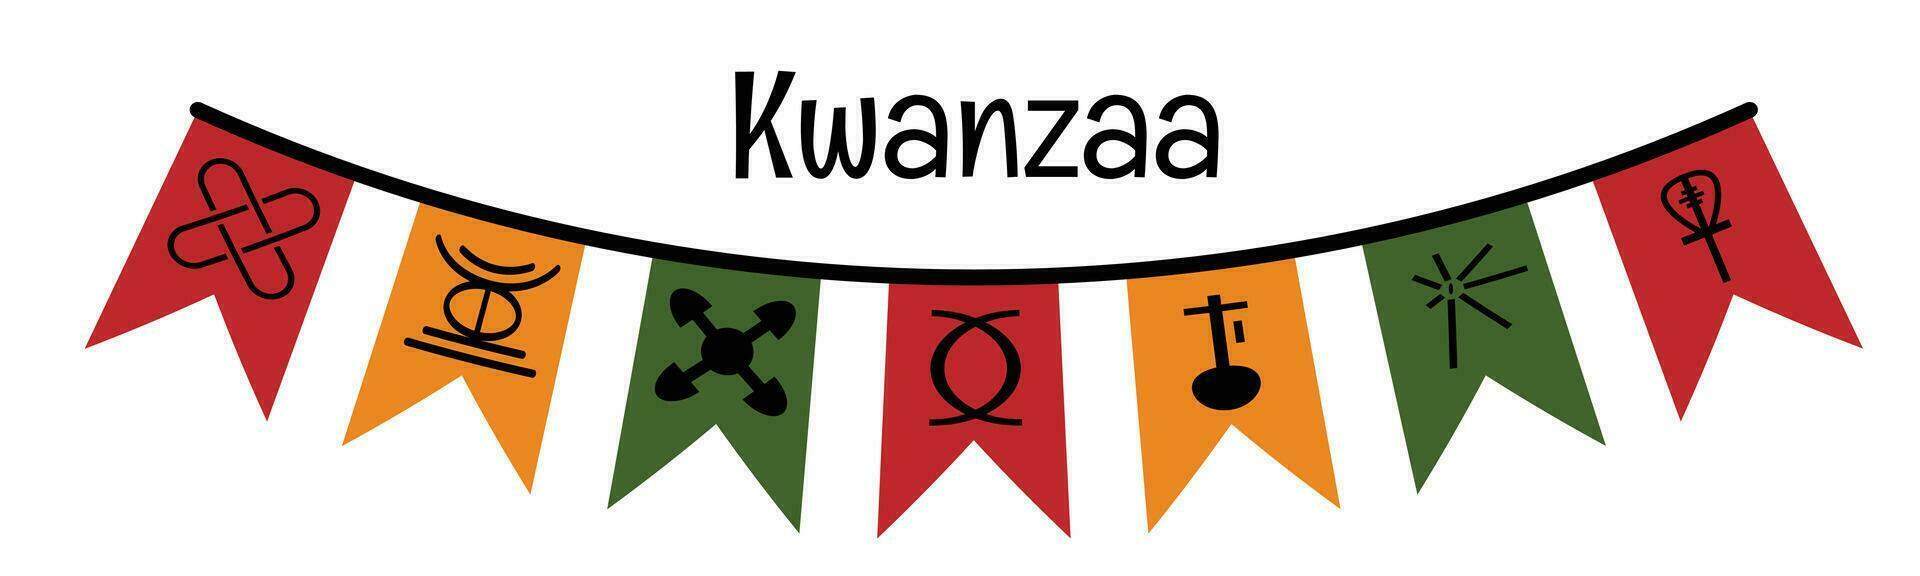 kwanzaa festival viering. feestelijk vlaggedoek vlaggen met zeven principes van kwanzaa symbolen. Afrikaanse Amerikaans erfgoed vakantie. vector